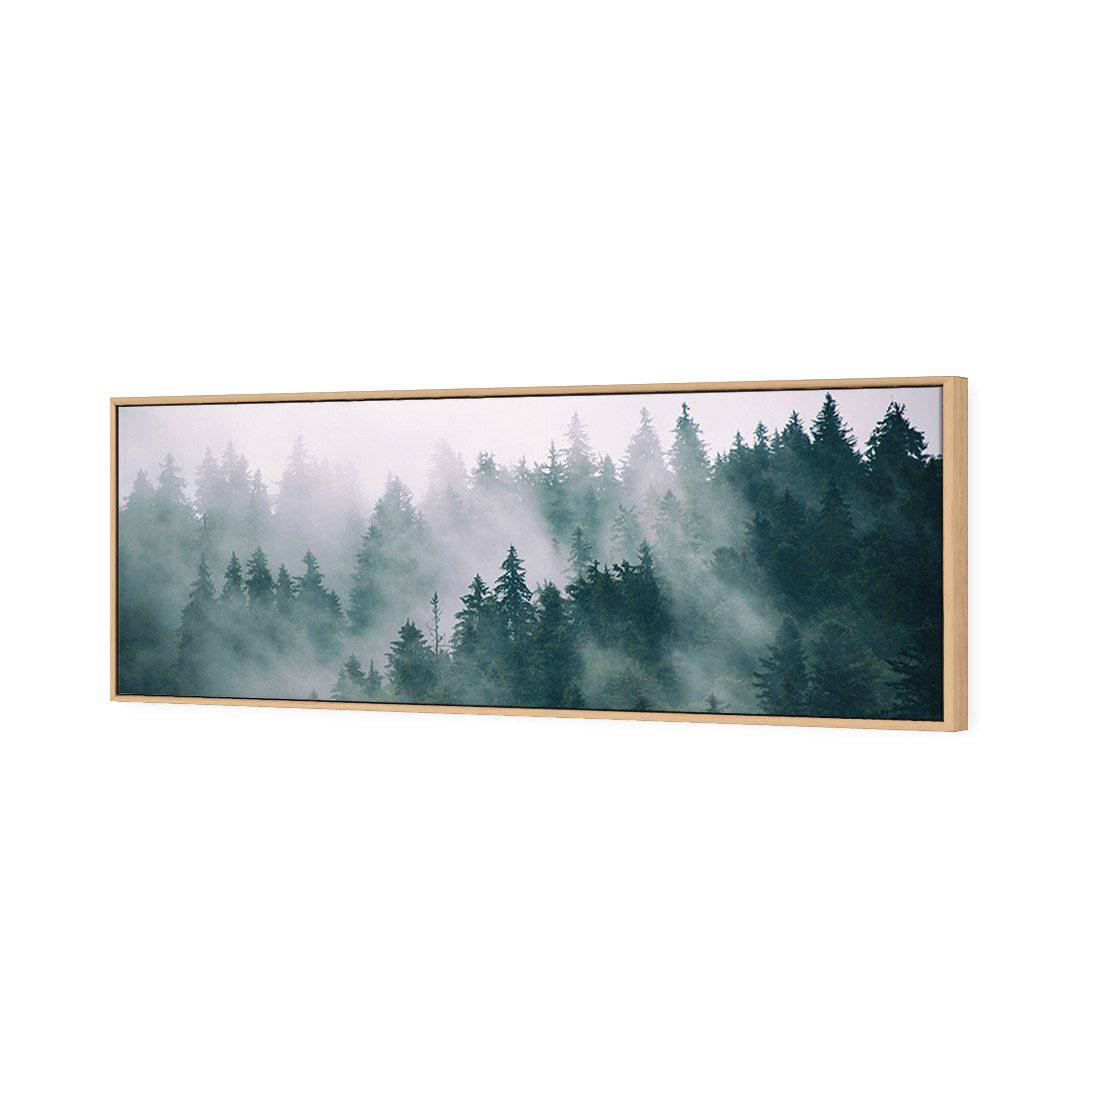 Silence of the Alps Canvas Art-Canvas-Wall Art Designs-60x20cm-Canvas - Oak Frame-Wall Art Designs